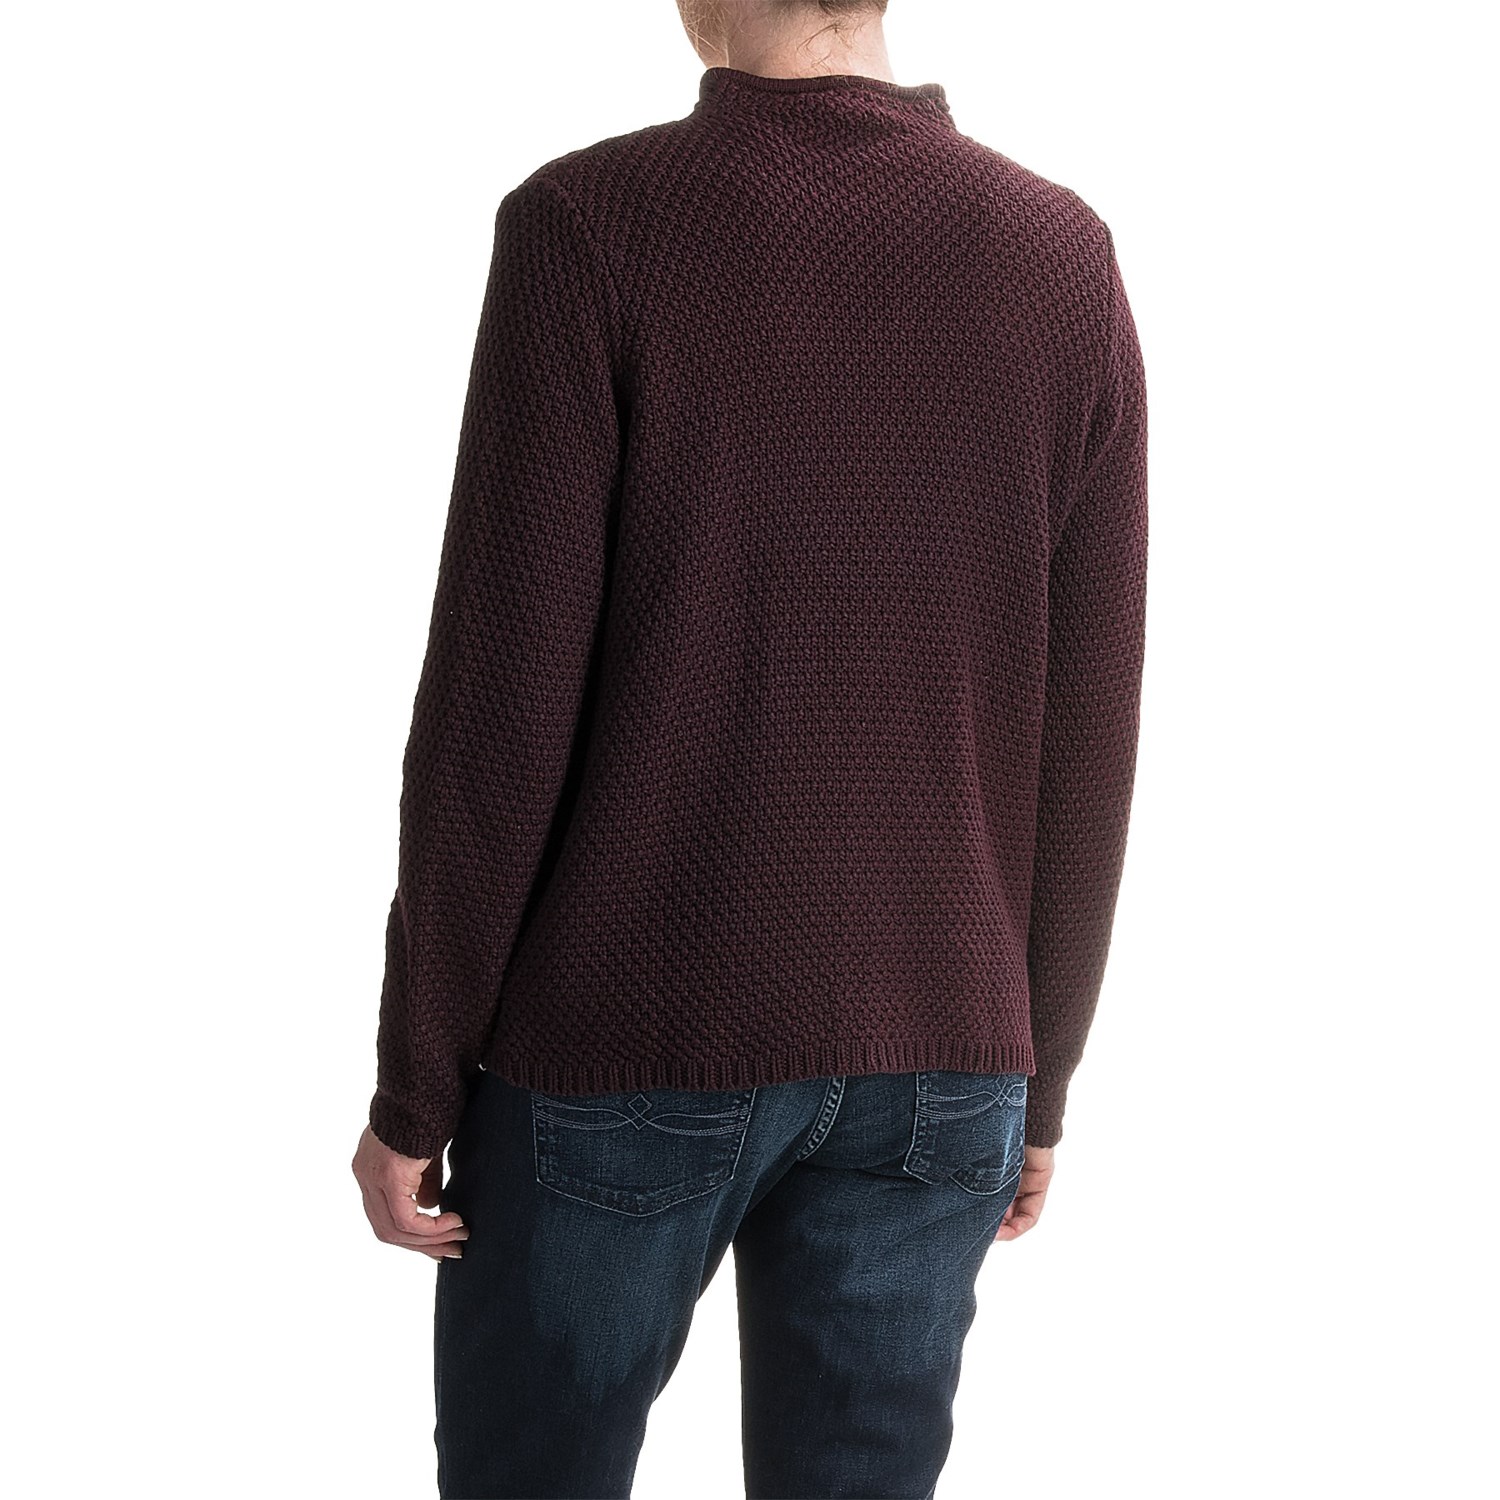 Woolrich Poppy Ridge Pointelle Cardigan Sweater (For Women)